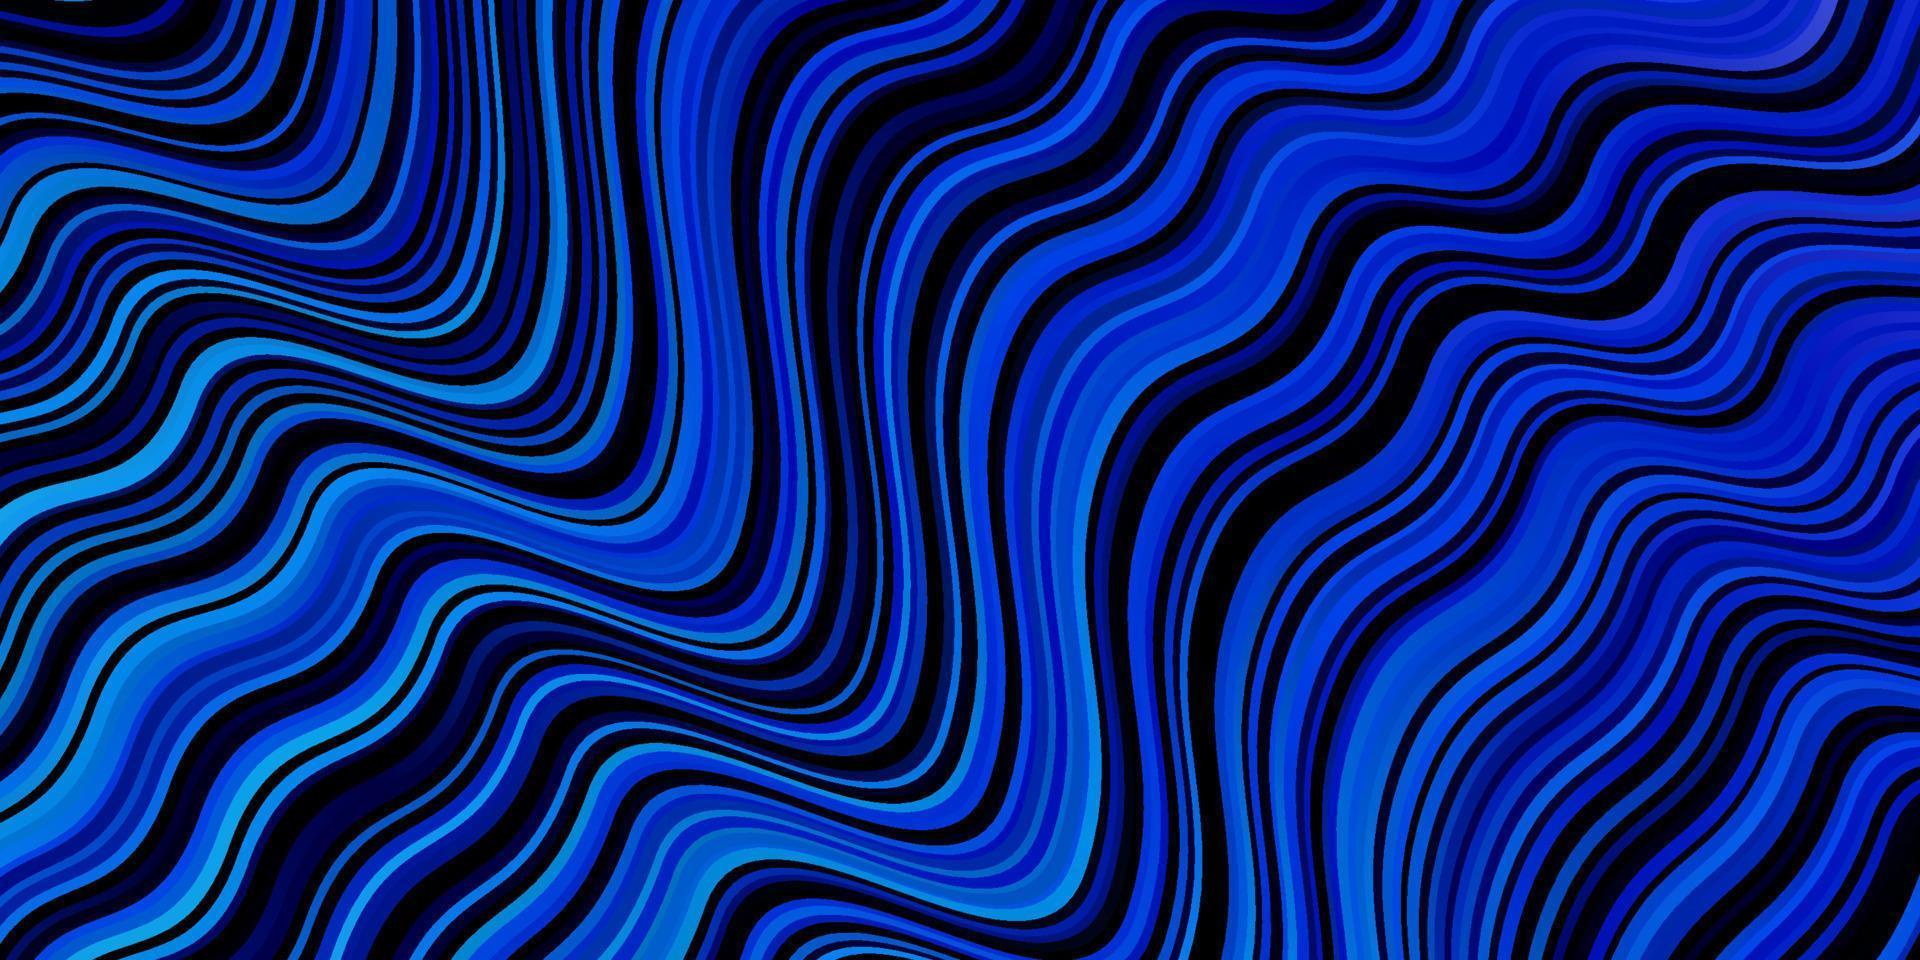 Fondo de vector azul oscuro con líneas dobladas.